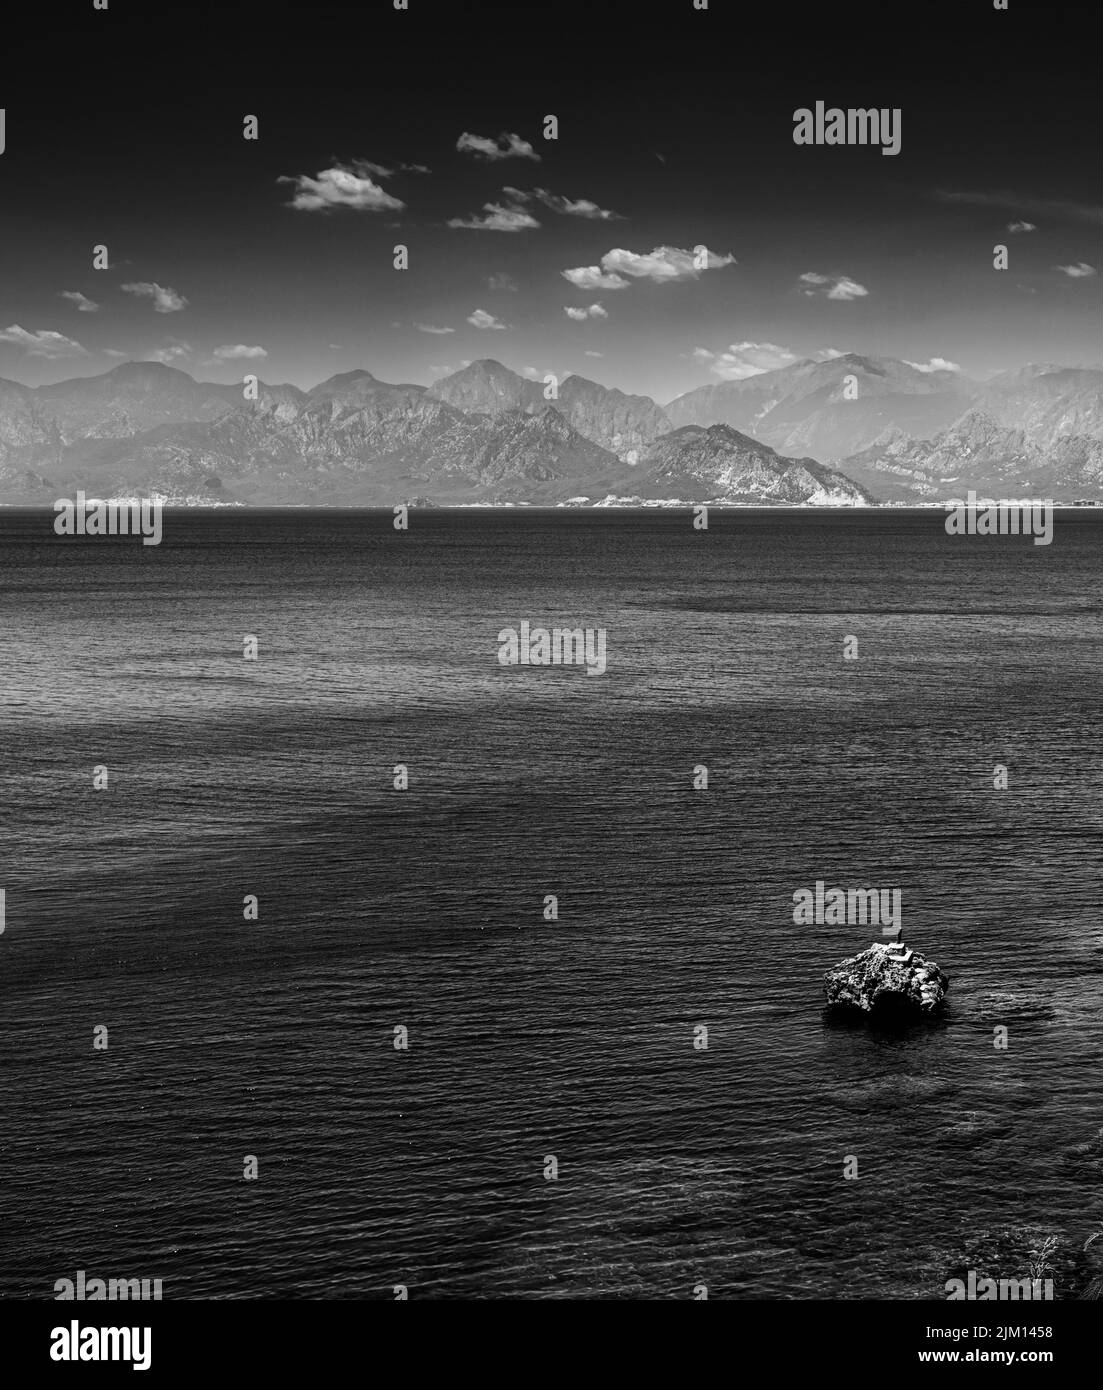 Blanco y negro BW Moody y fotografía atmosférica de un paisaje marino con montañas y roca solitaria Foto de stock